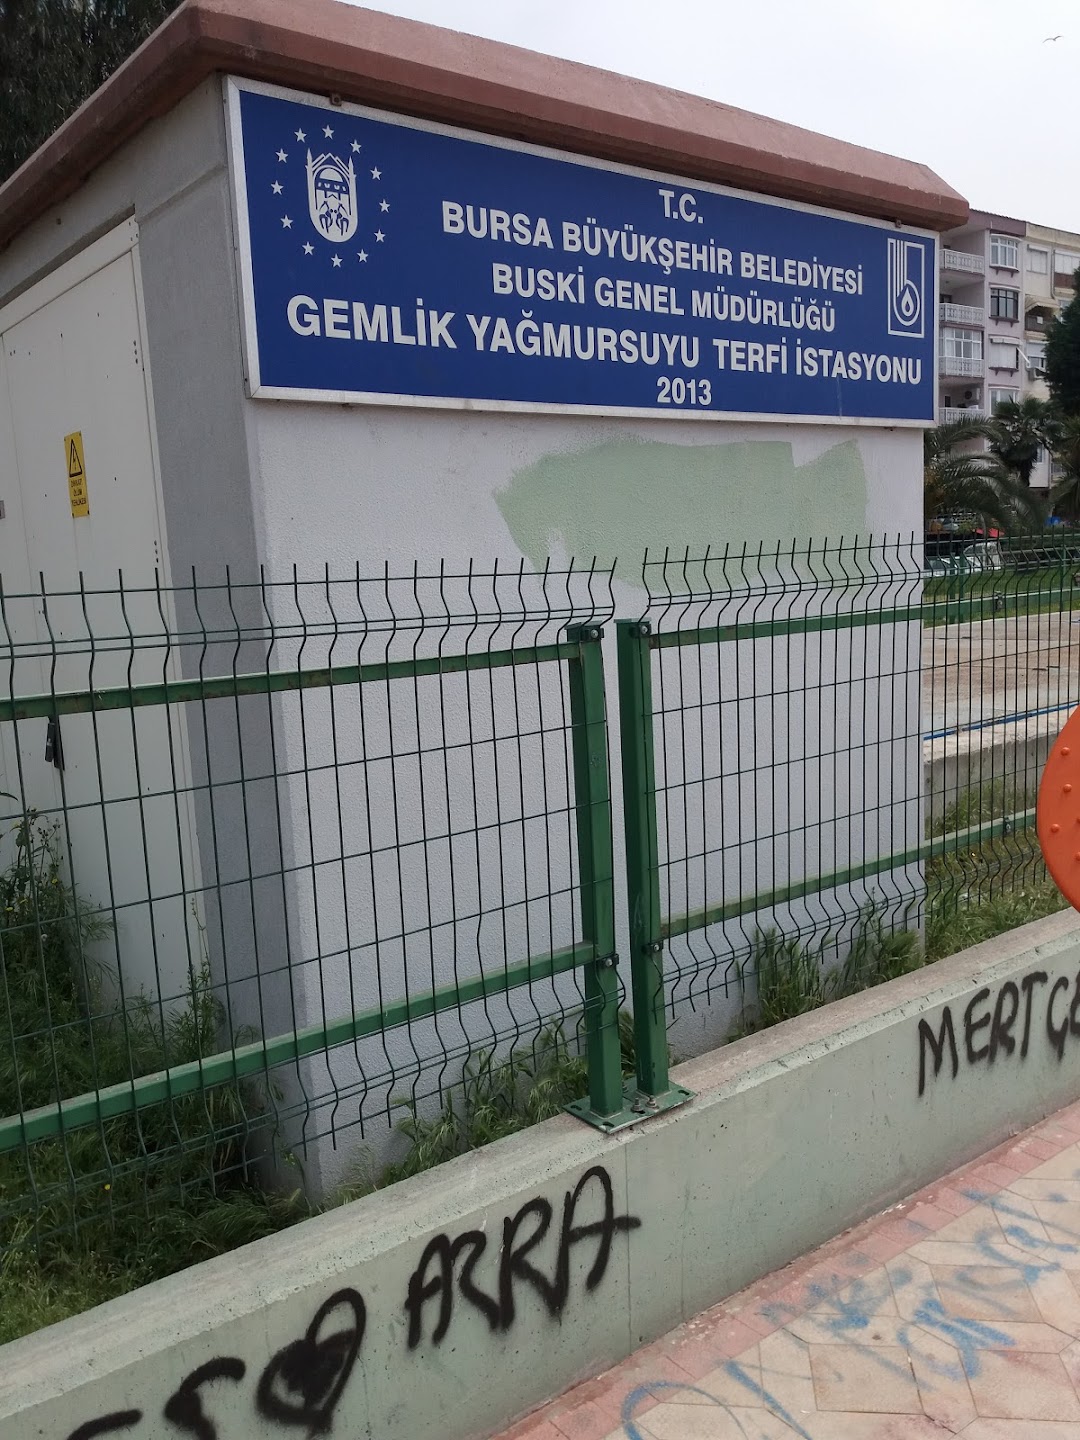 T.C. Bursa Bykehir Belediyesi Buski Genel Mdrl Gemlik Yamursuyu Terfi stasyonu